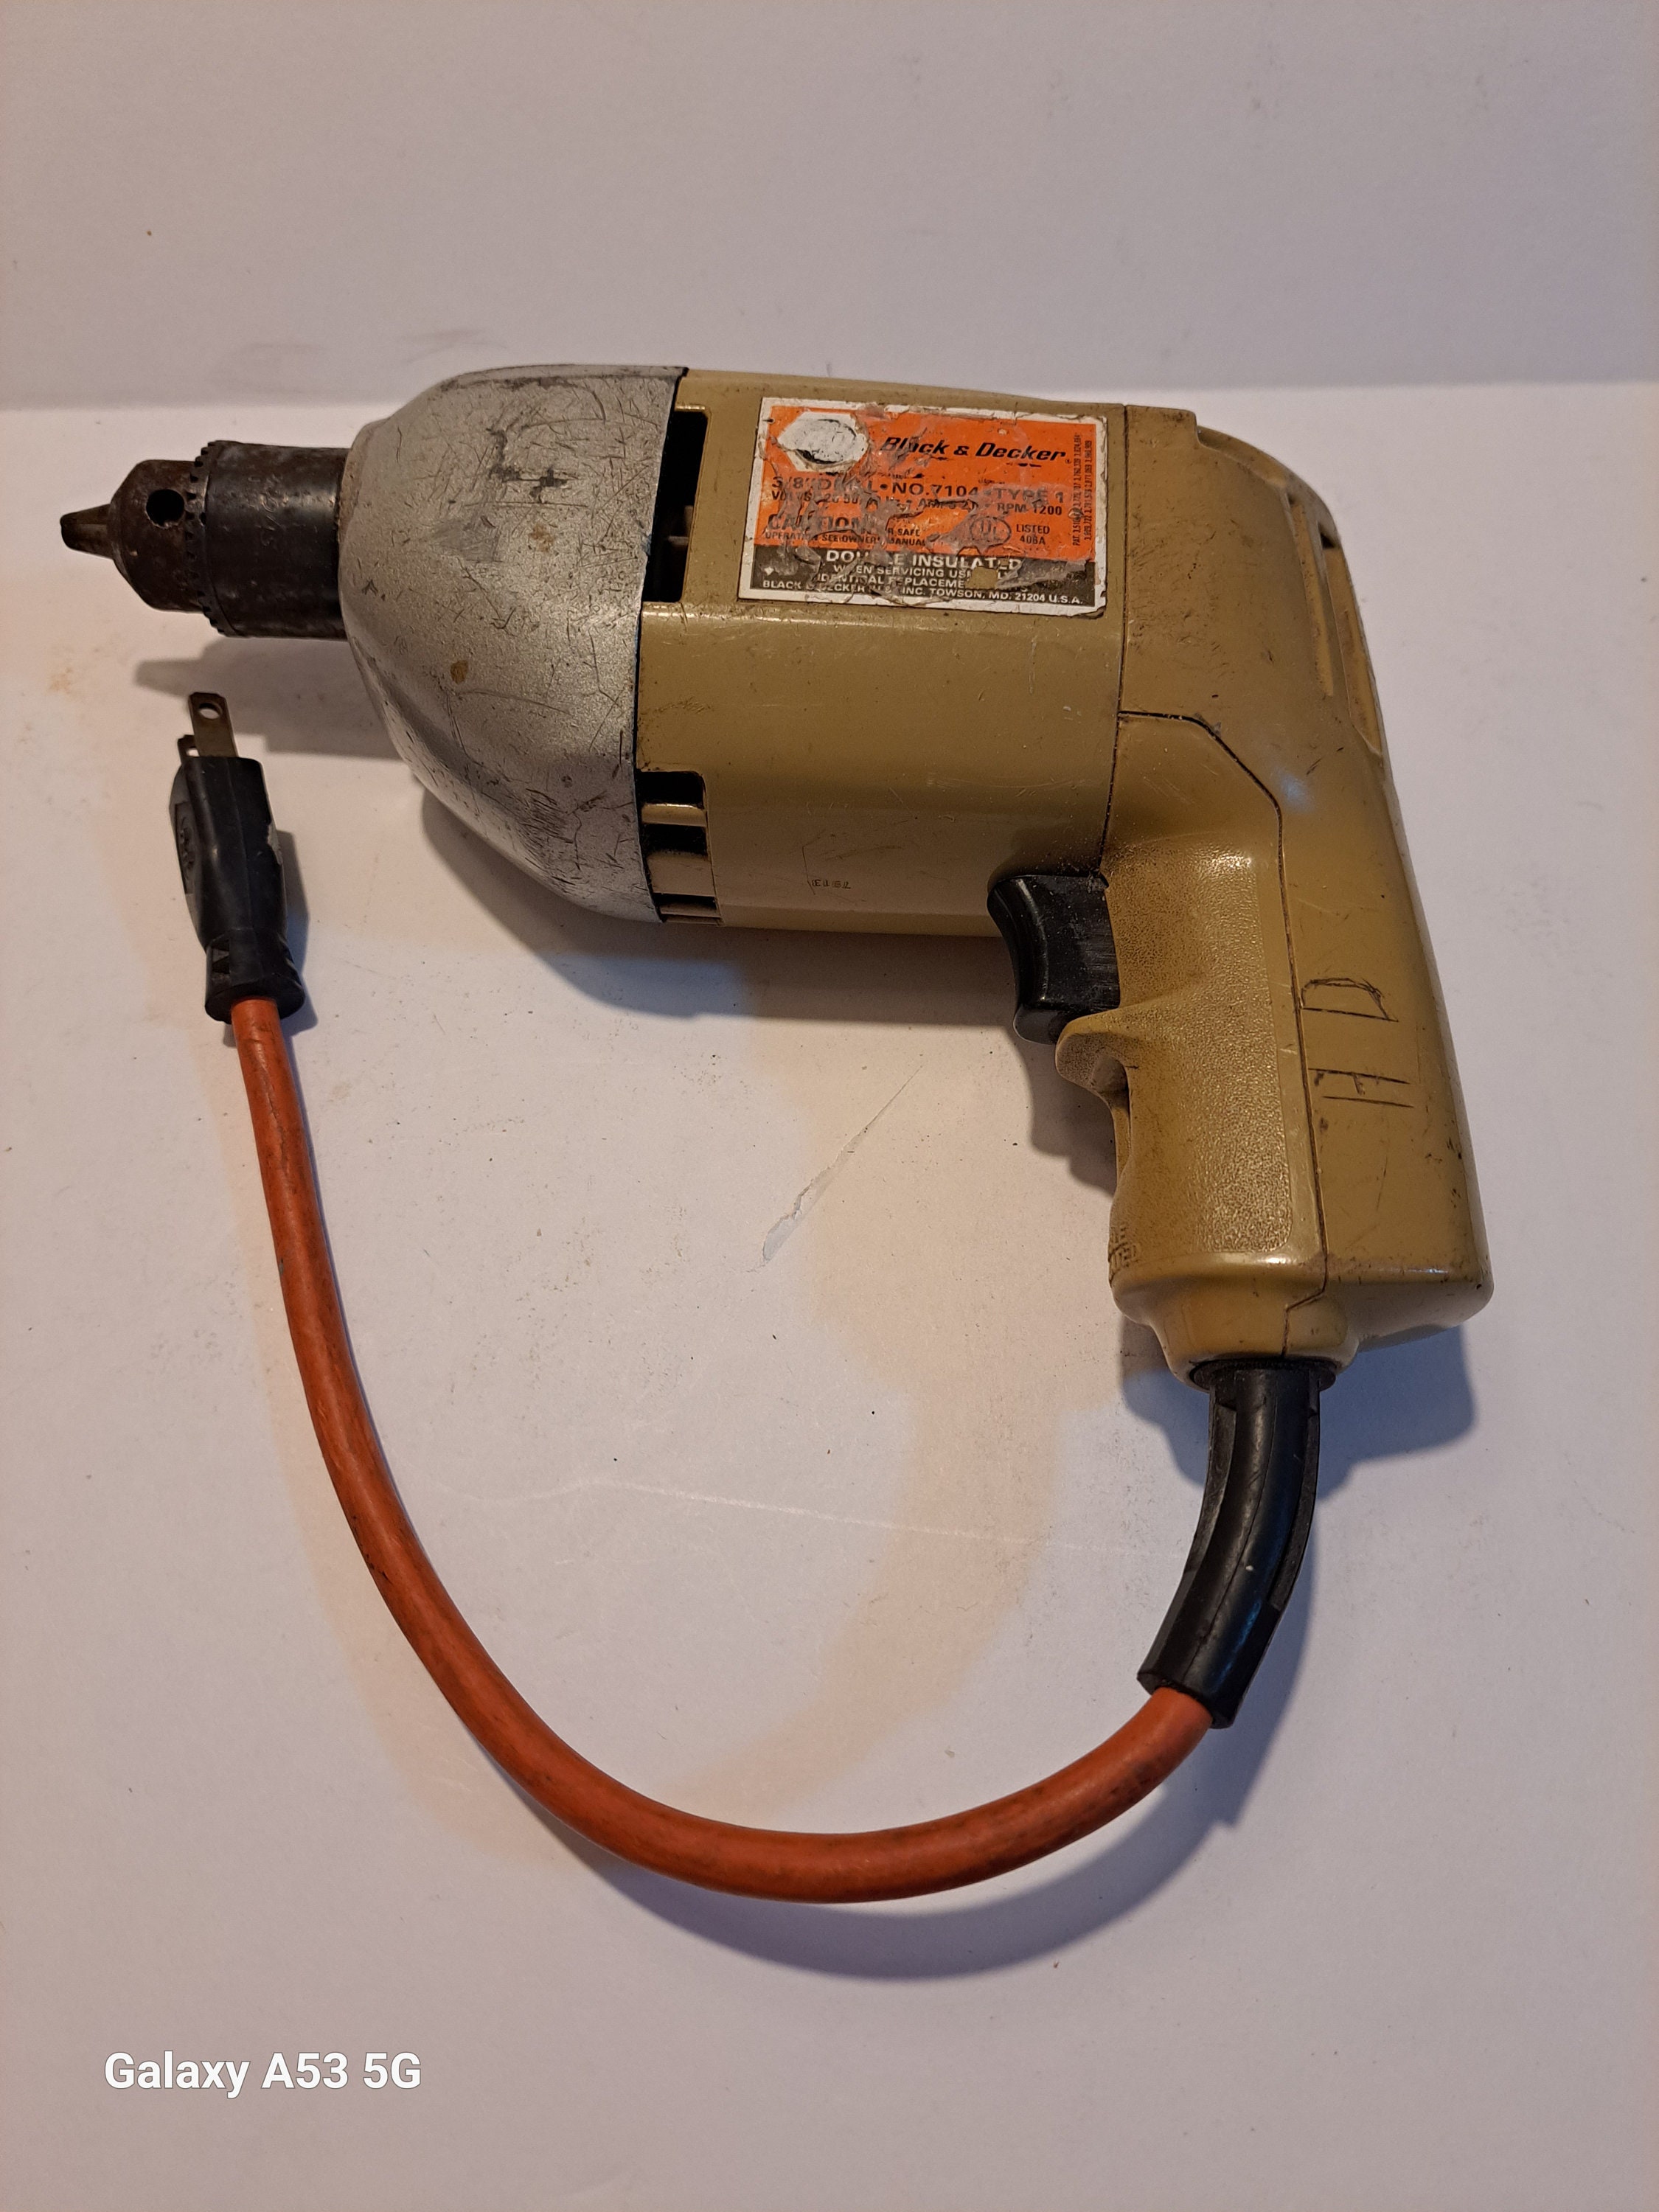 Vintage Black & Decker Drill Bit Sharpener attachment Model 79-800